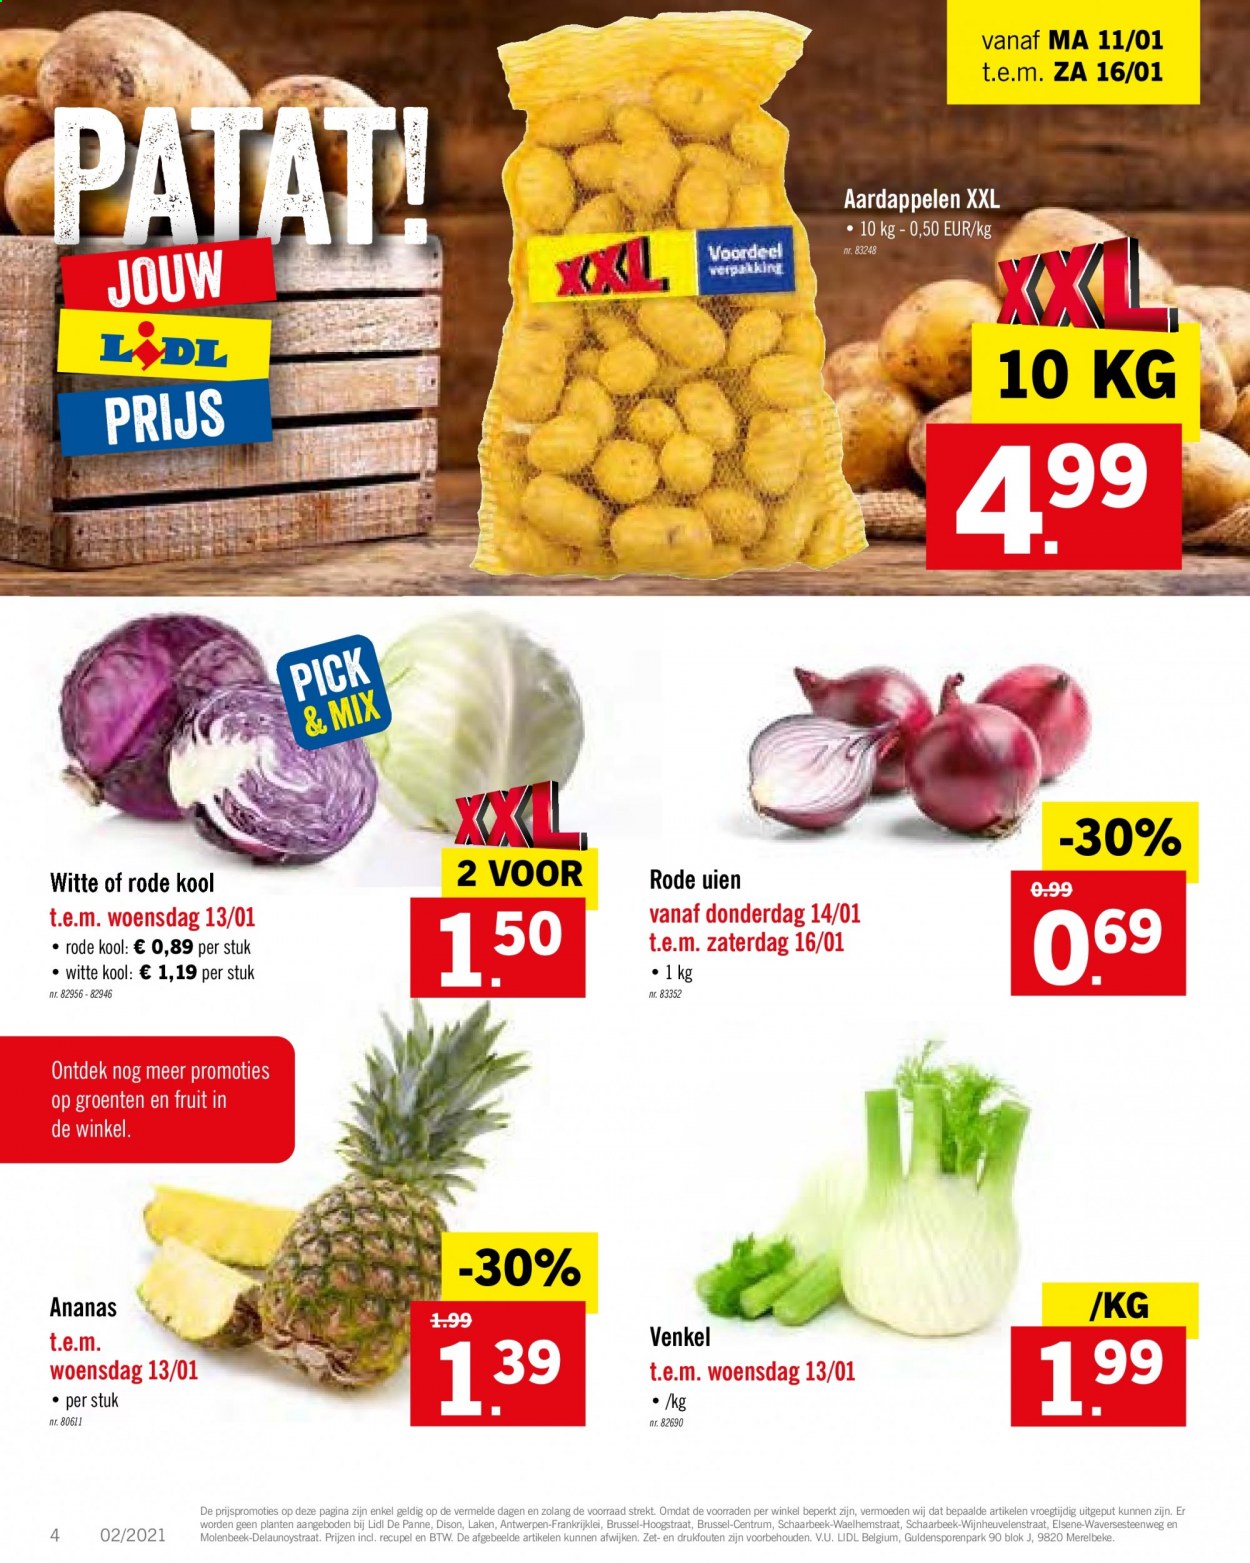 thumbnail - Lidl-aanbieding - 11/01/2021 - 16/01/2021 -  producten in de aanbieding - aardappelen, venkel, witte kool, ananas. Pagina 4.